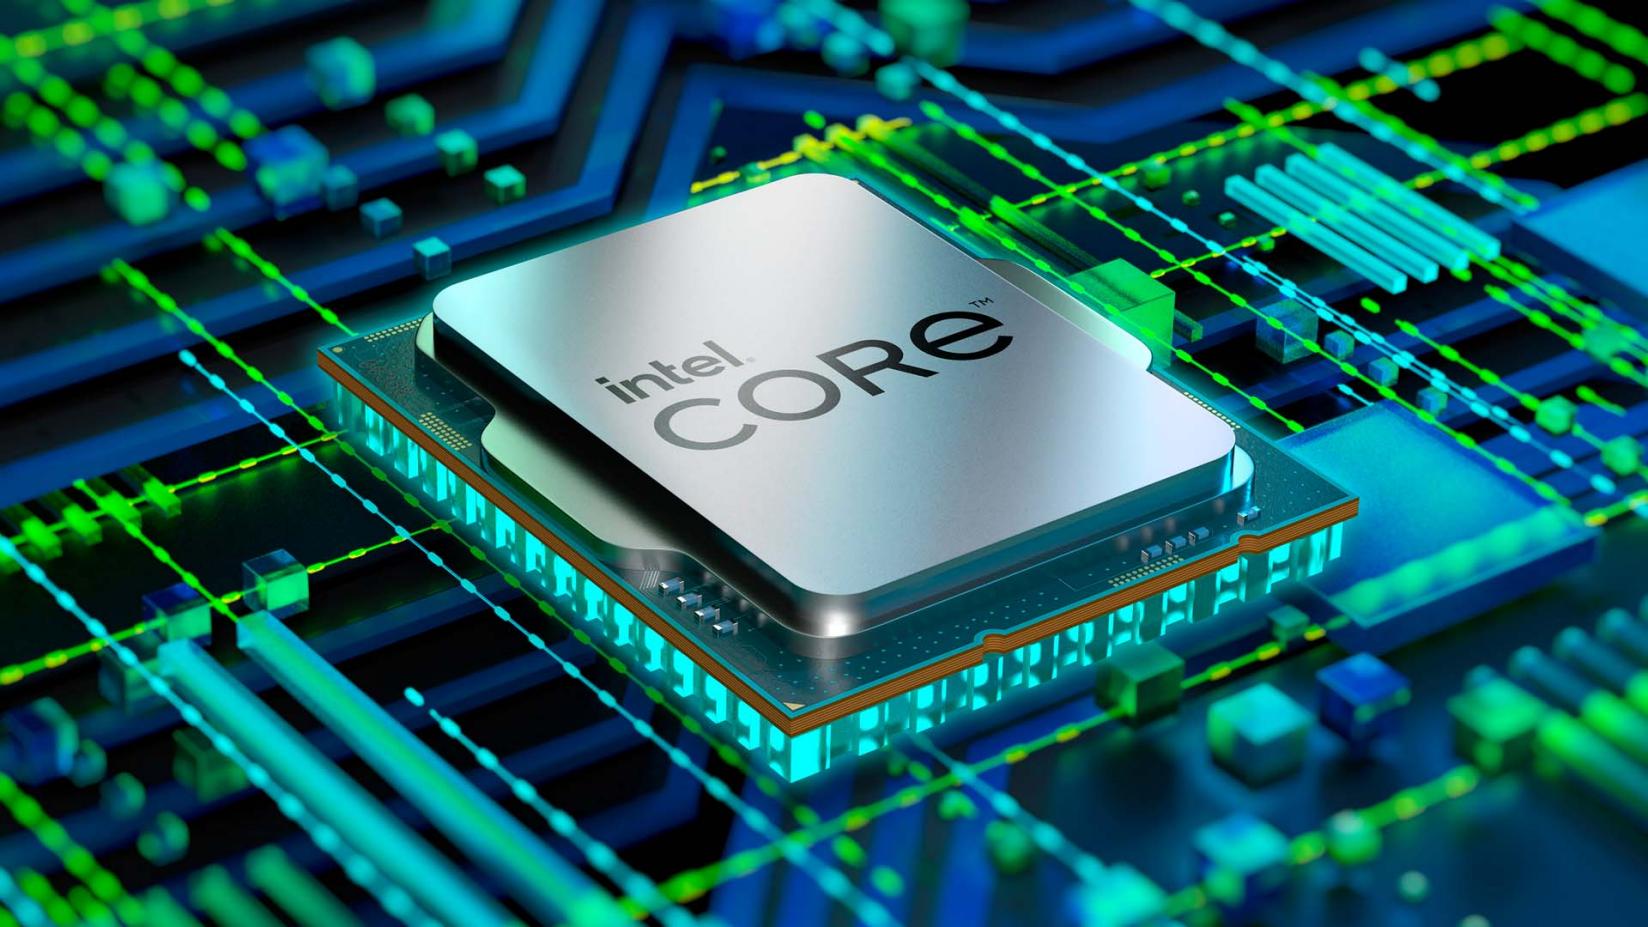 Immagine pubblicata in relazione al seguente contenuto: Intel annuncia i processori Core di dodicesima generazione (Alder Lake) | Nome immagine: news32624_Intel-Core-dodicesima-generazione-Alder-Lake_1.jpg